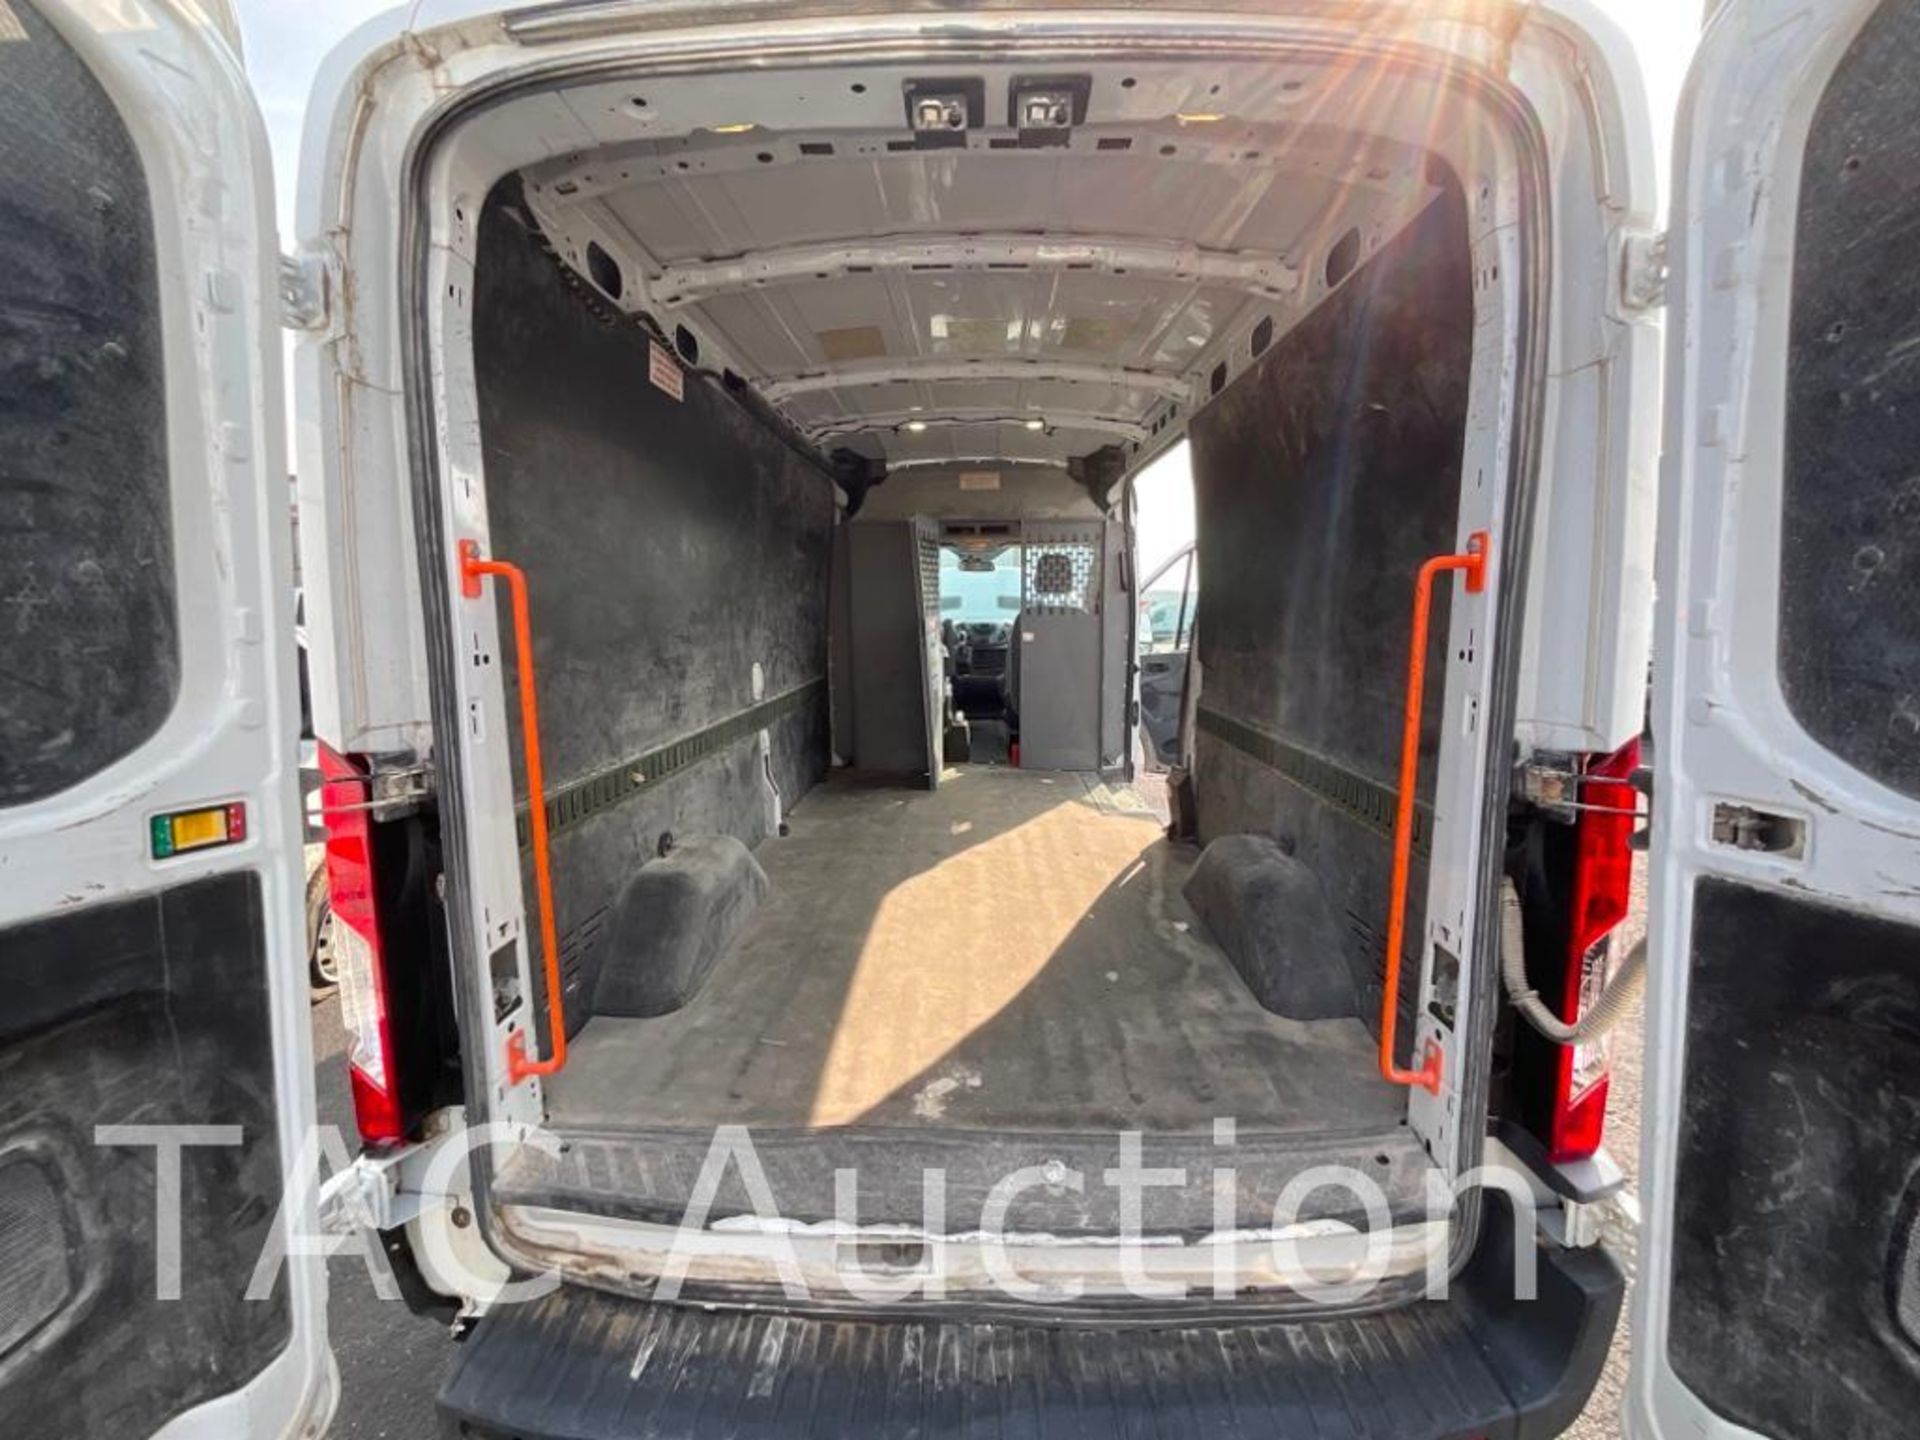 2017 Ford Transit 150 Cargo Van - Image 28 of 49